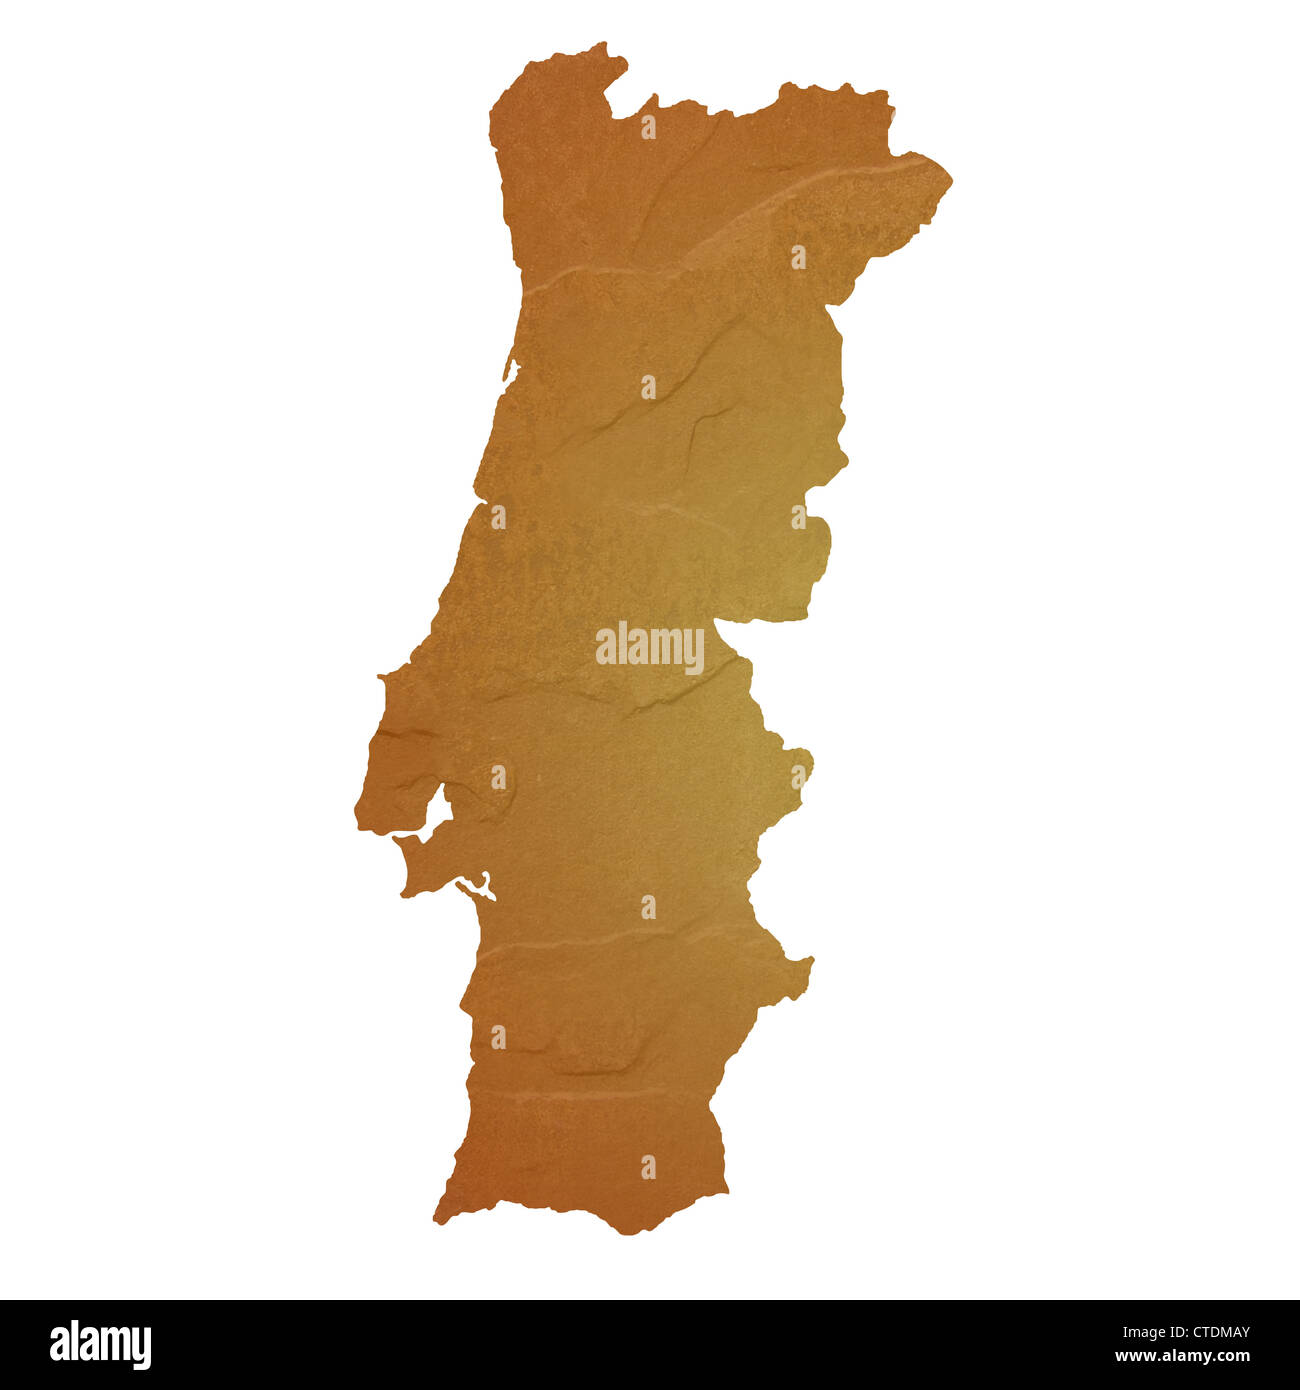 Strukturierten Landkarte Portugal Karte mit braunen Felsen oder Stein Textur, isoliert auf weißem Hintergrund mit Beschneidungspfad. Stockfoto